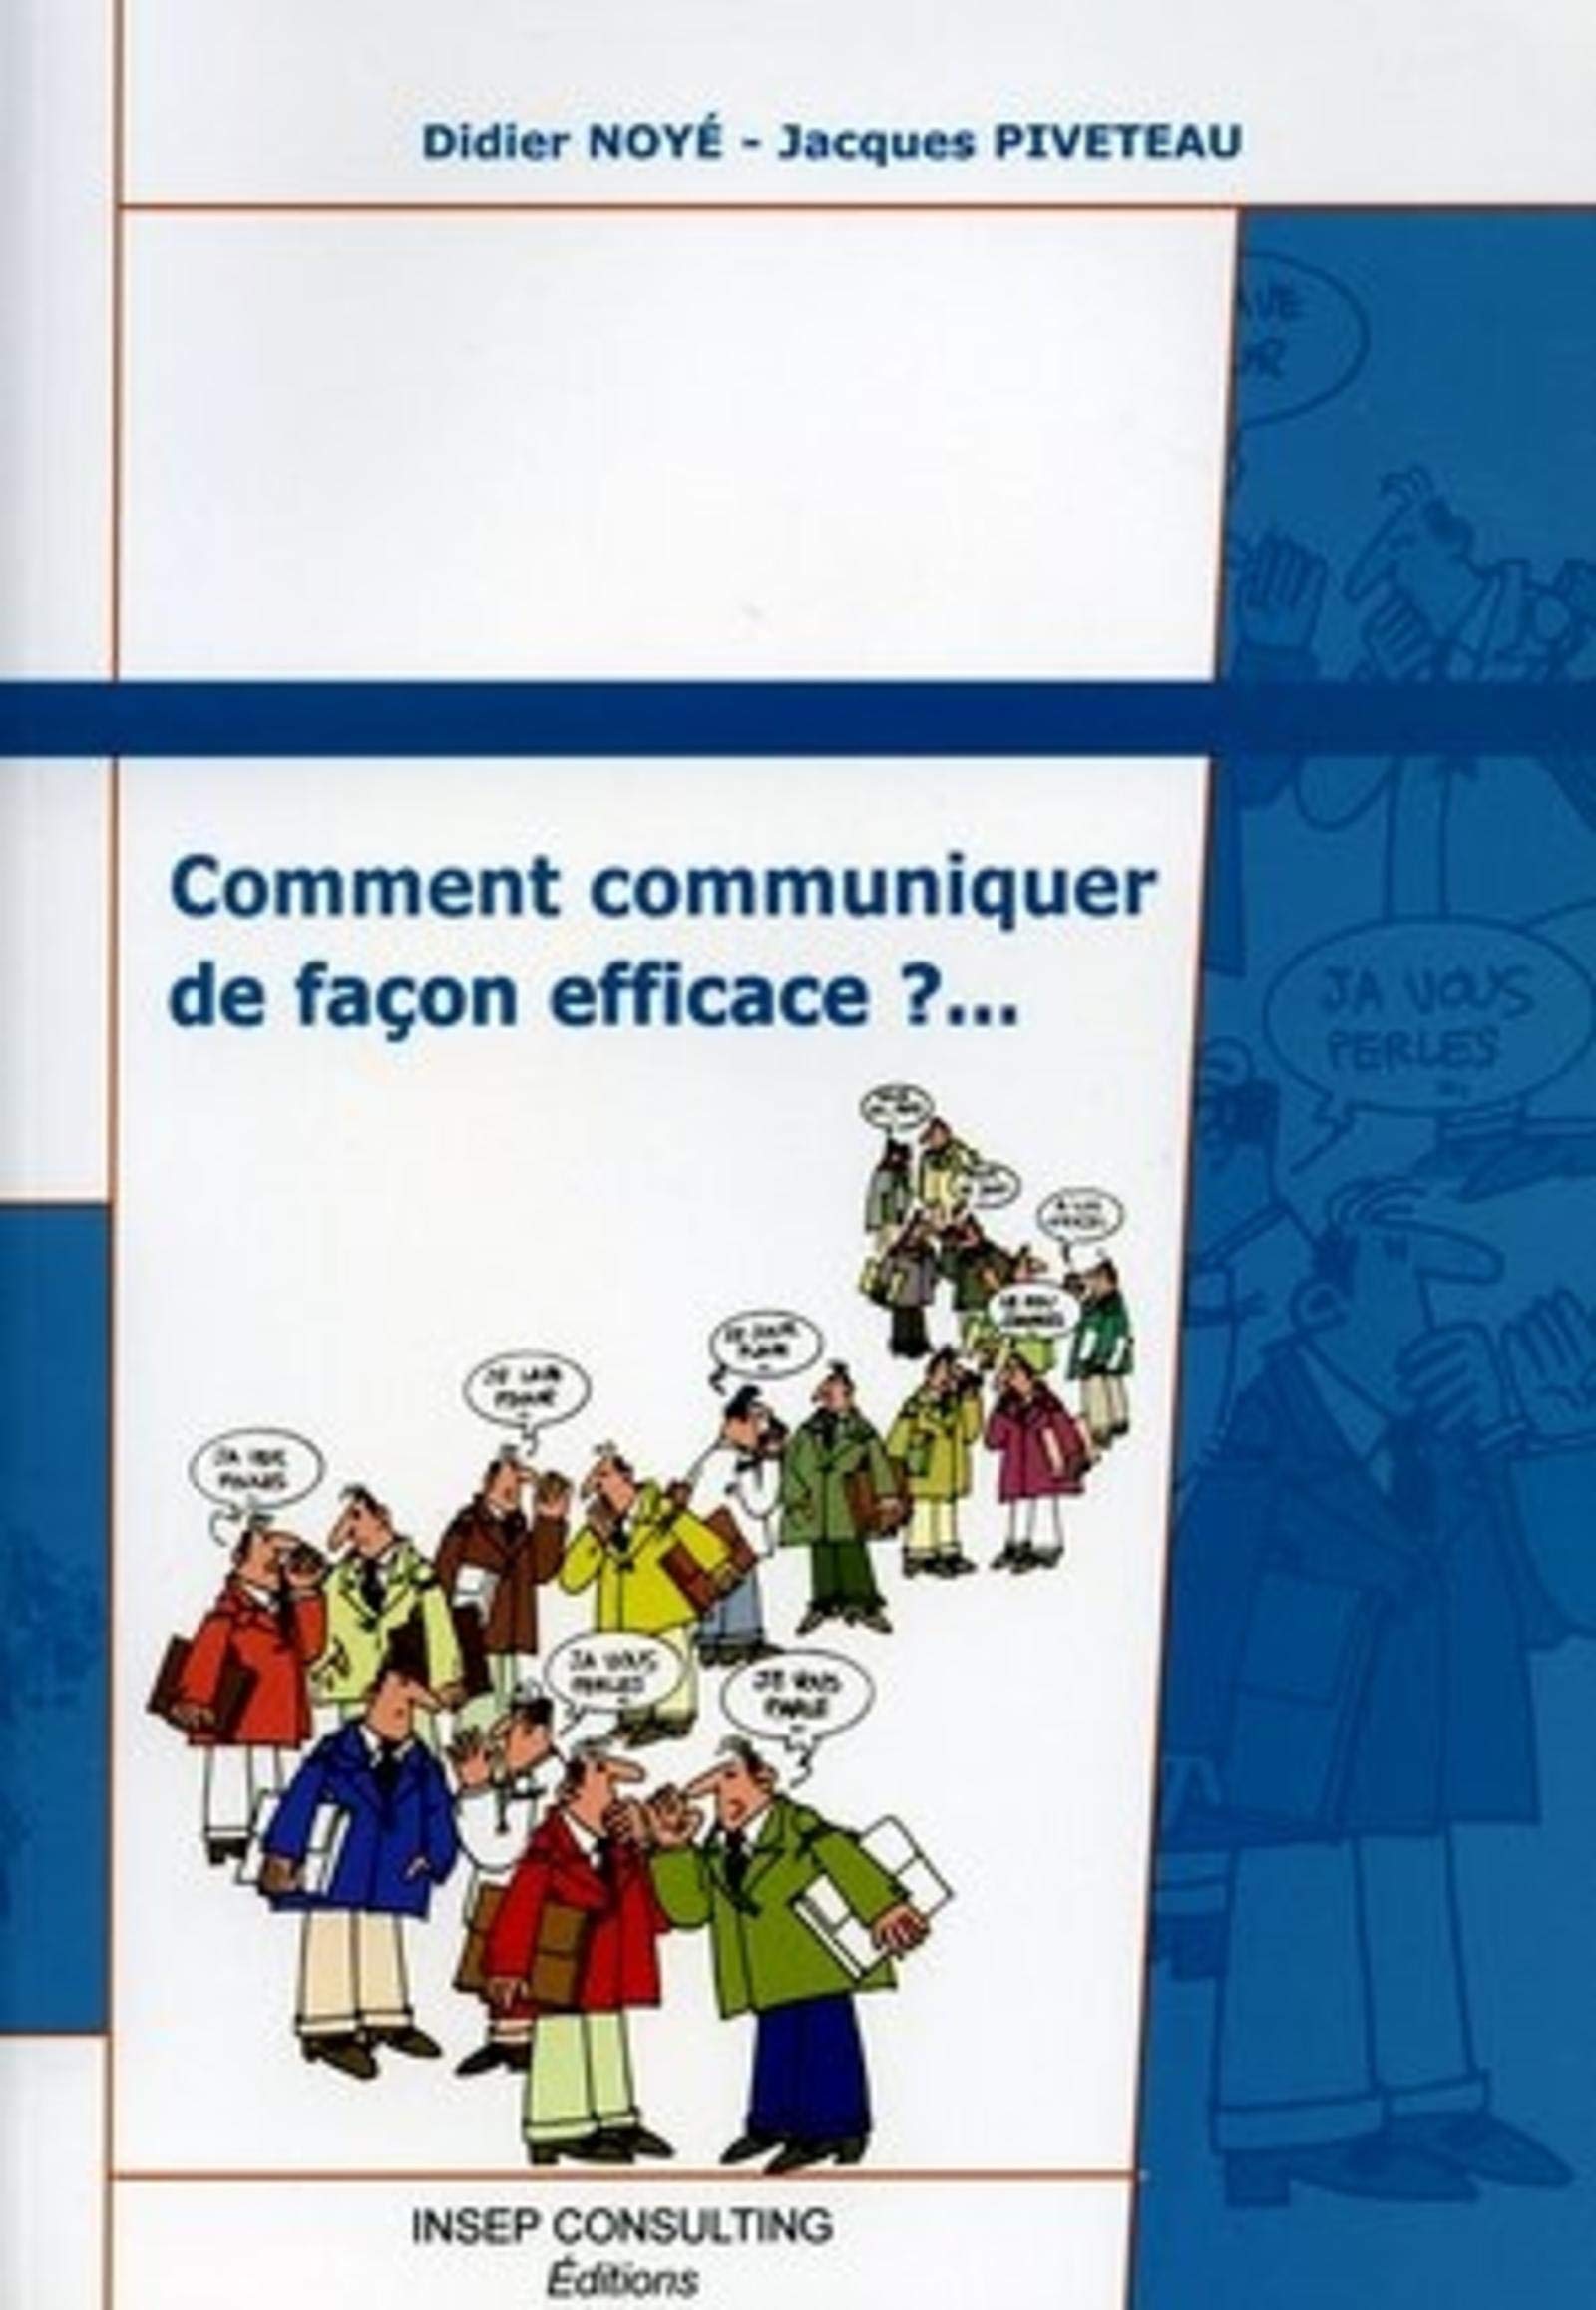 Livre ISBN 2914006403 Comment communiquer de façon efficace (Didier Noyé)